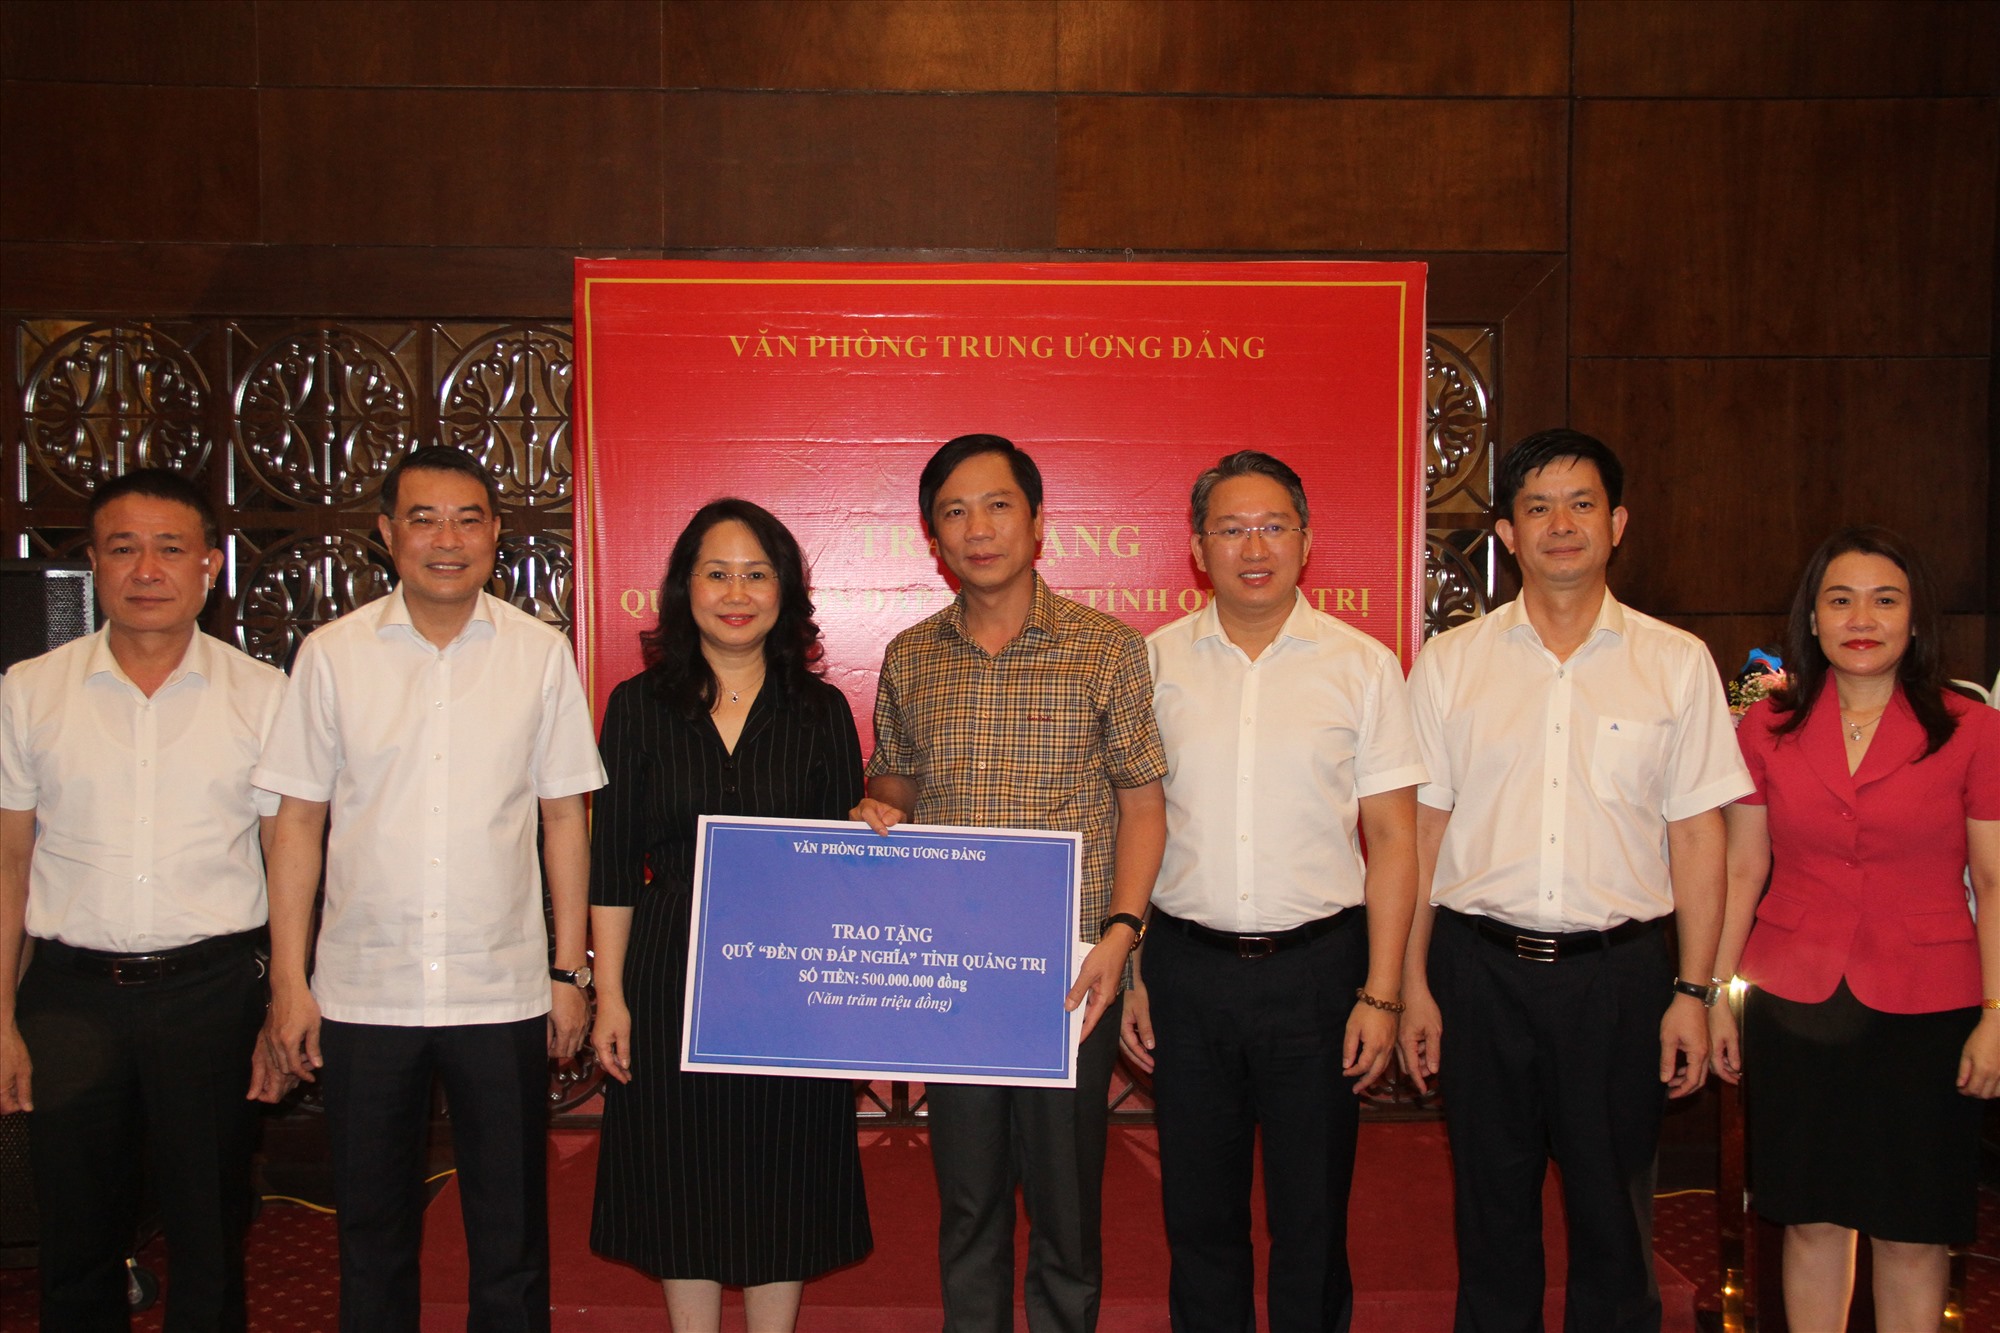 Đoàn công tác của Văn phòng Trung ương Đảng đã trao tặng số tiền 500 triệu đồng cho Quỹ Đền ơn đáp nghĩa tỉnh Quảng Trị - Ảnh: MĐ